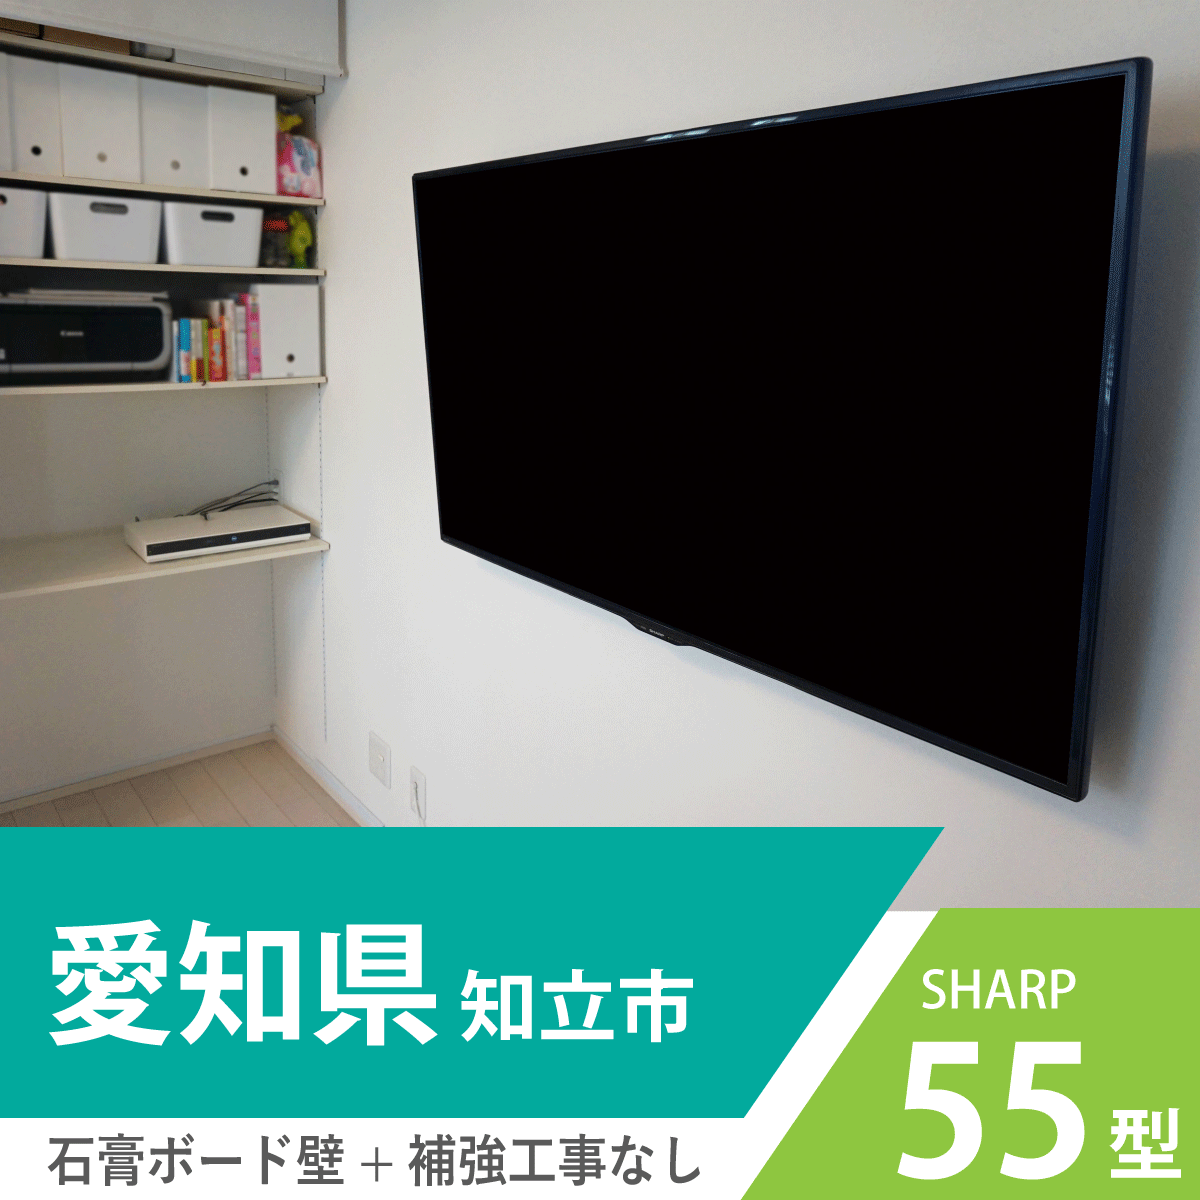 収納を上手に使ってすっきりな壁掛けテレビを実現 壁掛けテレビギャラリー